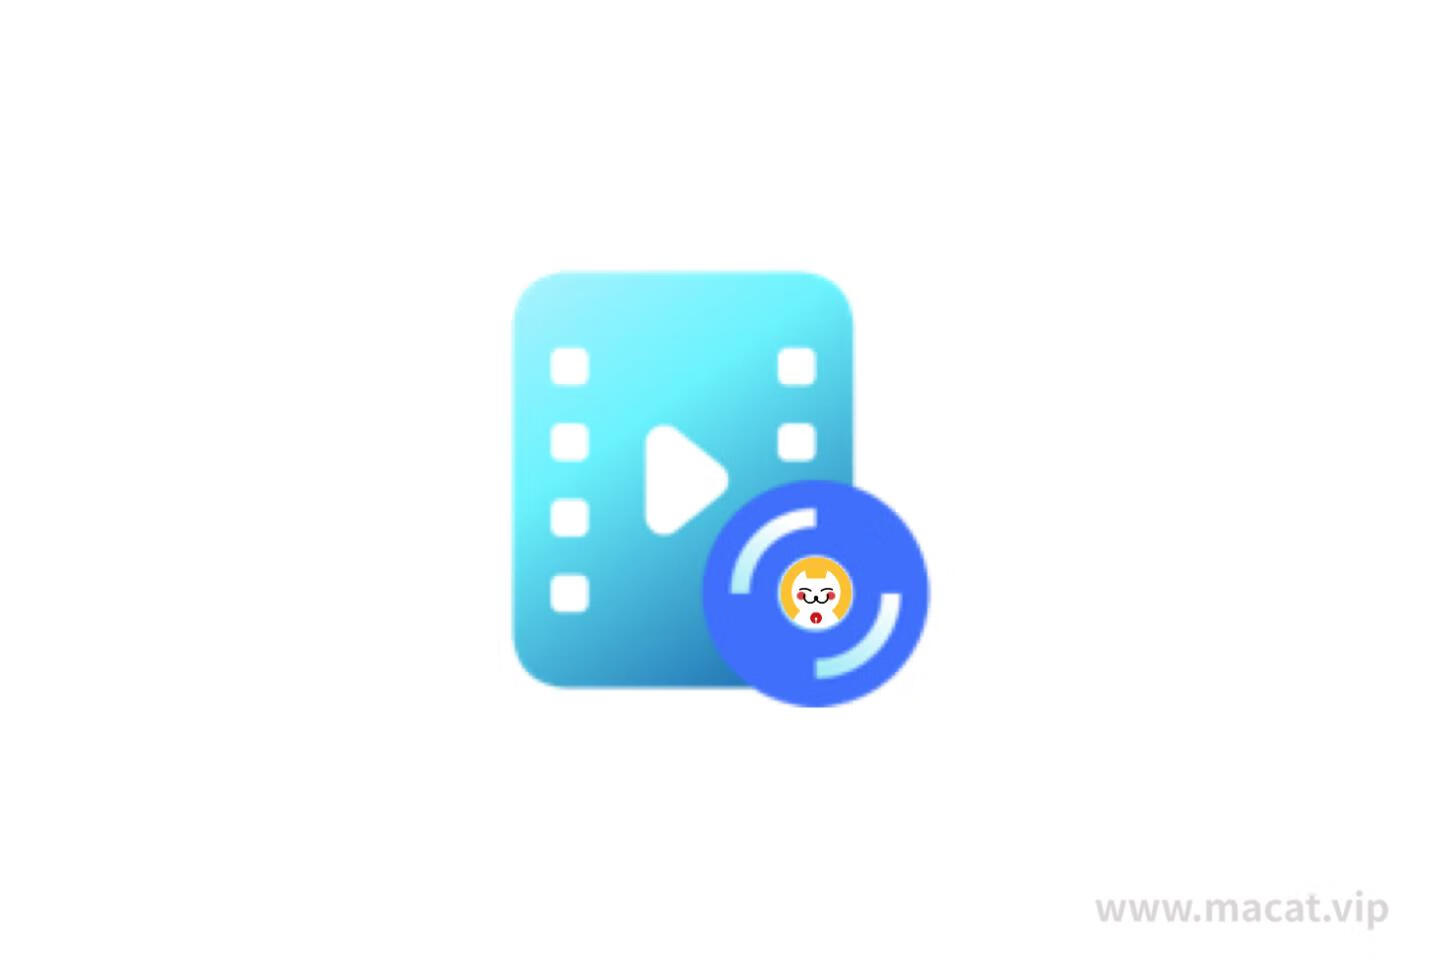 Yuhan Blu-ray DVD Creator for Mac v3.11.0激活版 DVD、蓝光、UHD 制作软件